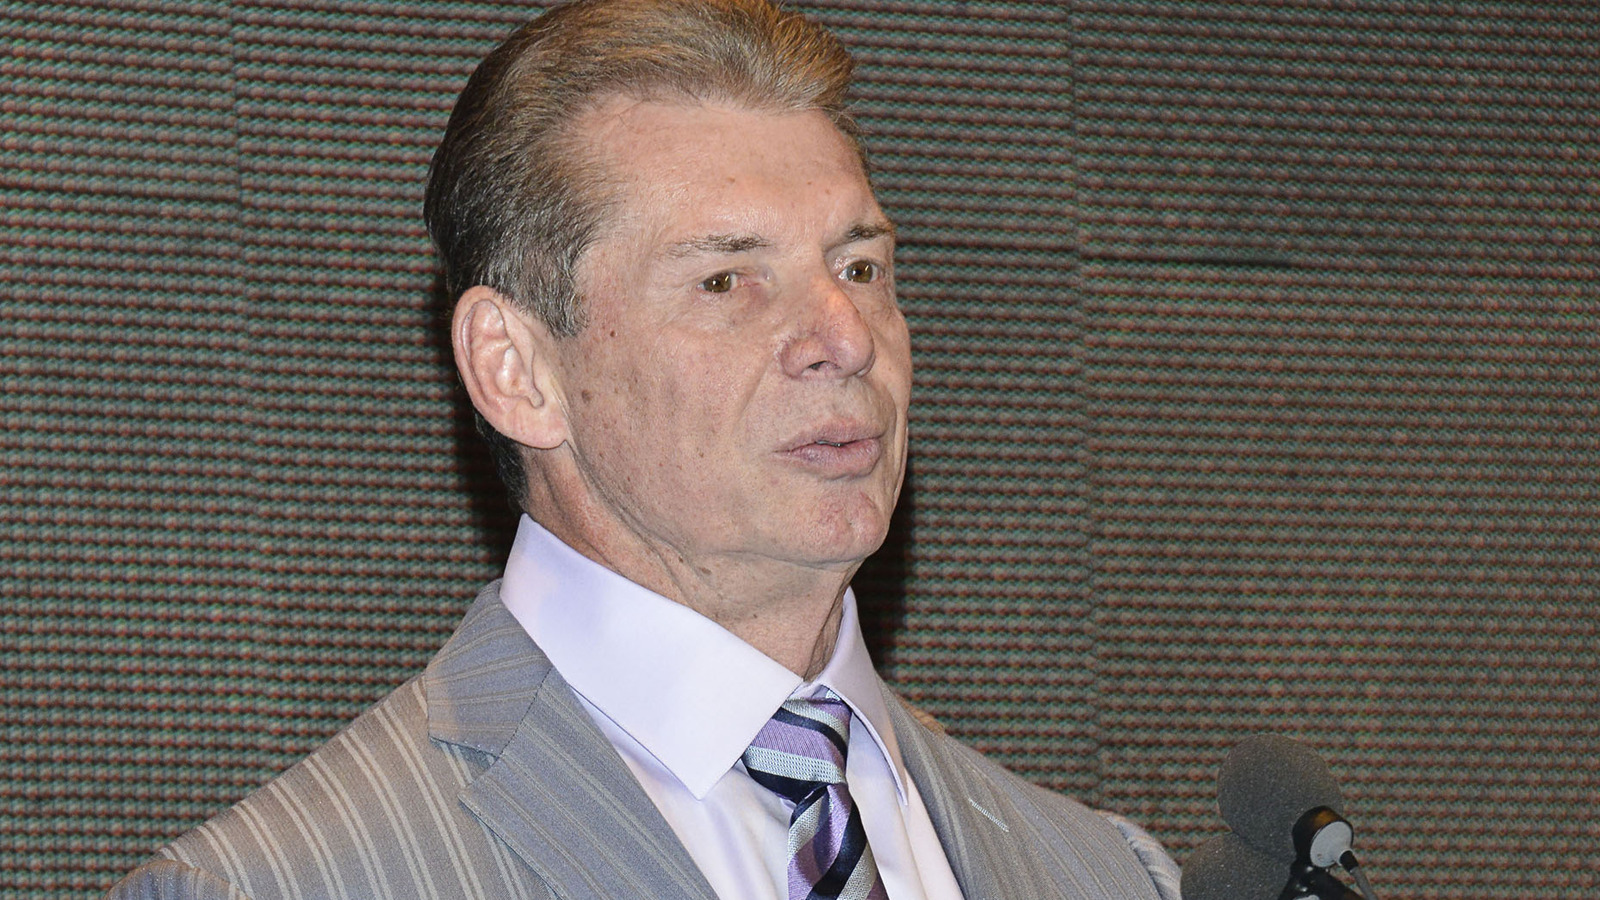 Noticias entre bastidores sobre la reacción interna a la renuncia de Vince McMahon de la WWE y el nocaut técnico